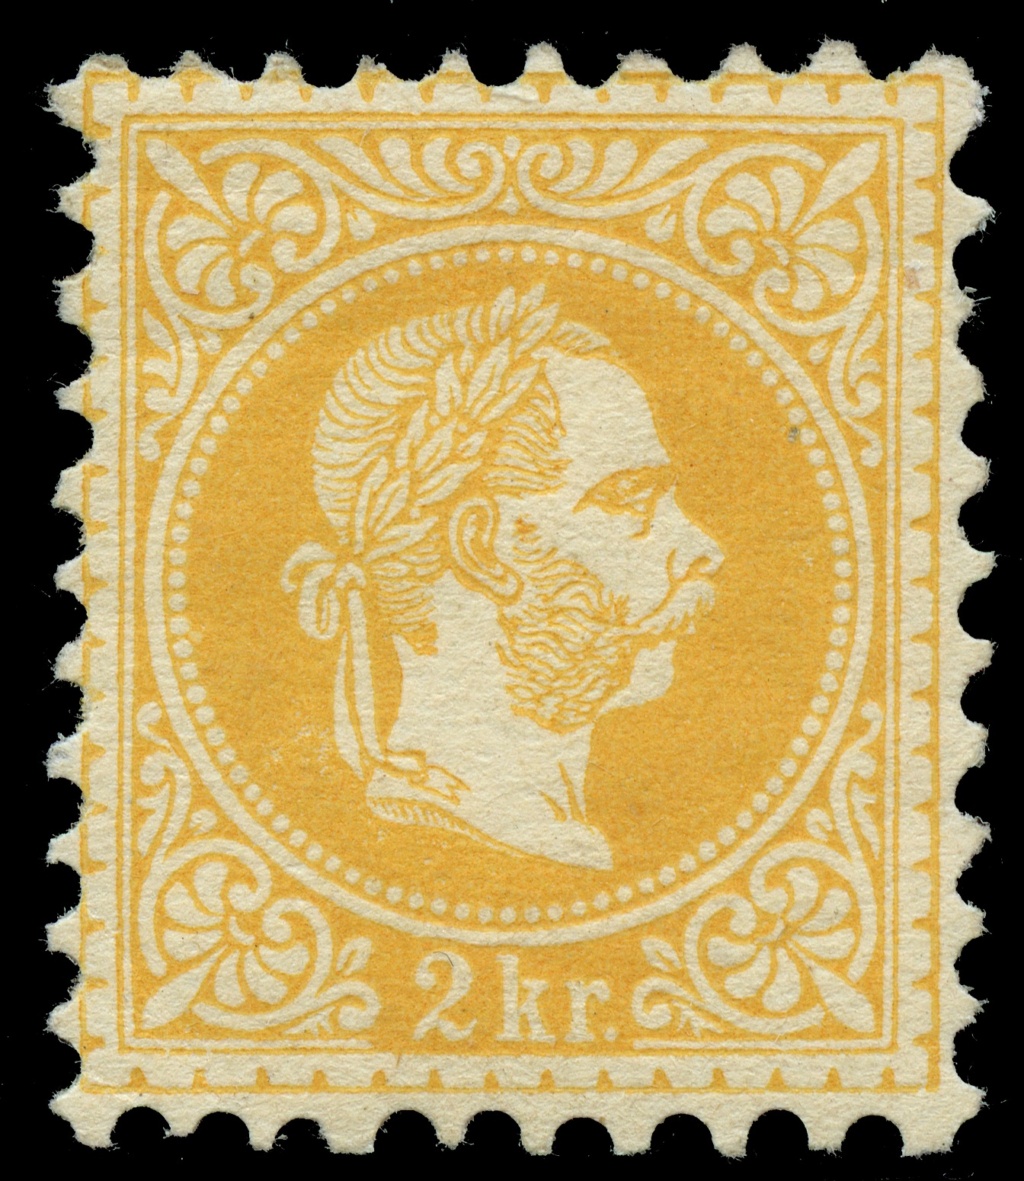 nach - Freimarken-Ausgabe 1867 : Kopfbildnis Kaiser Franz Joseph I - Seite 23 Ank_3520